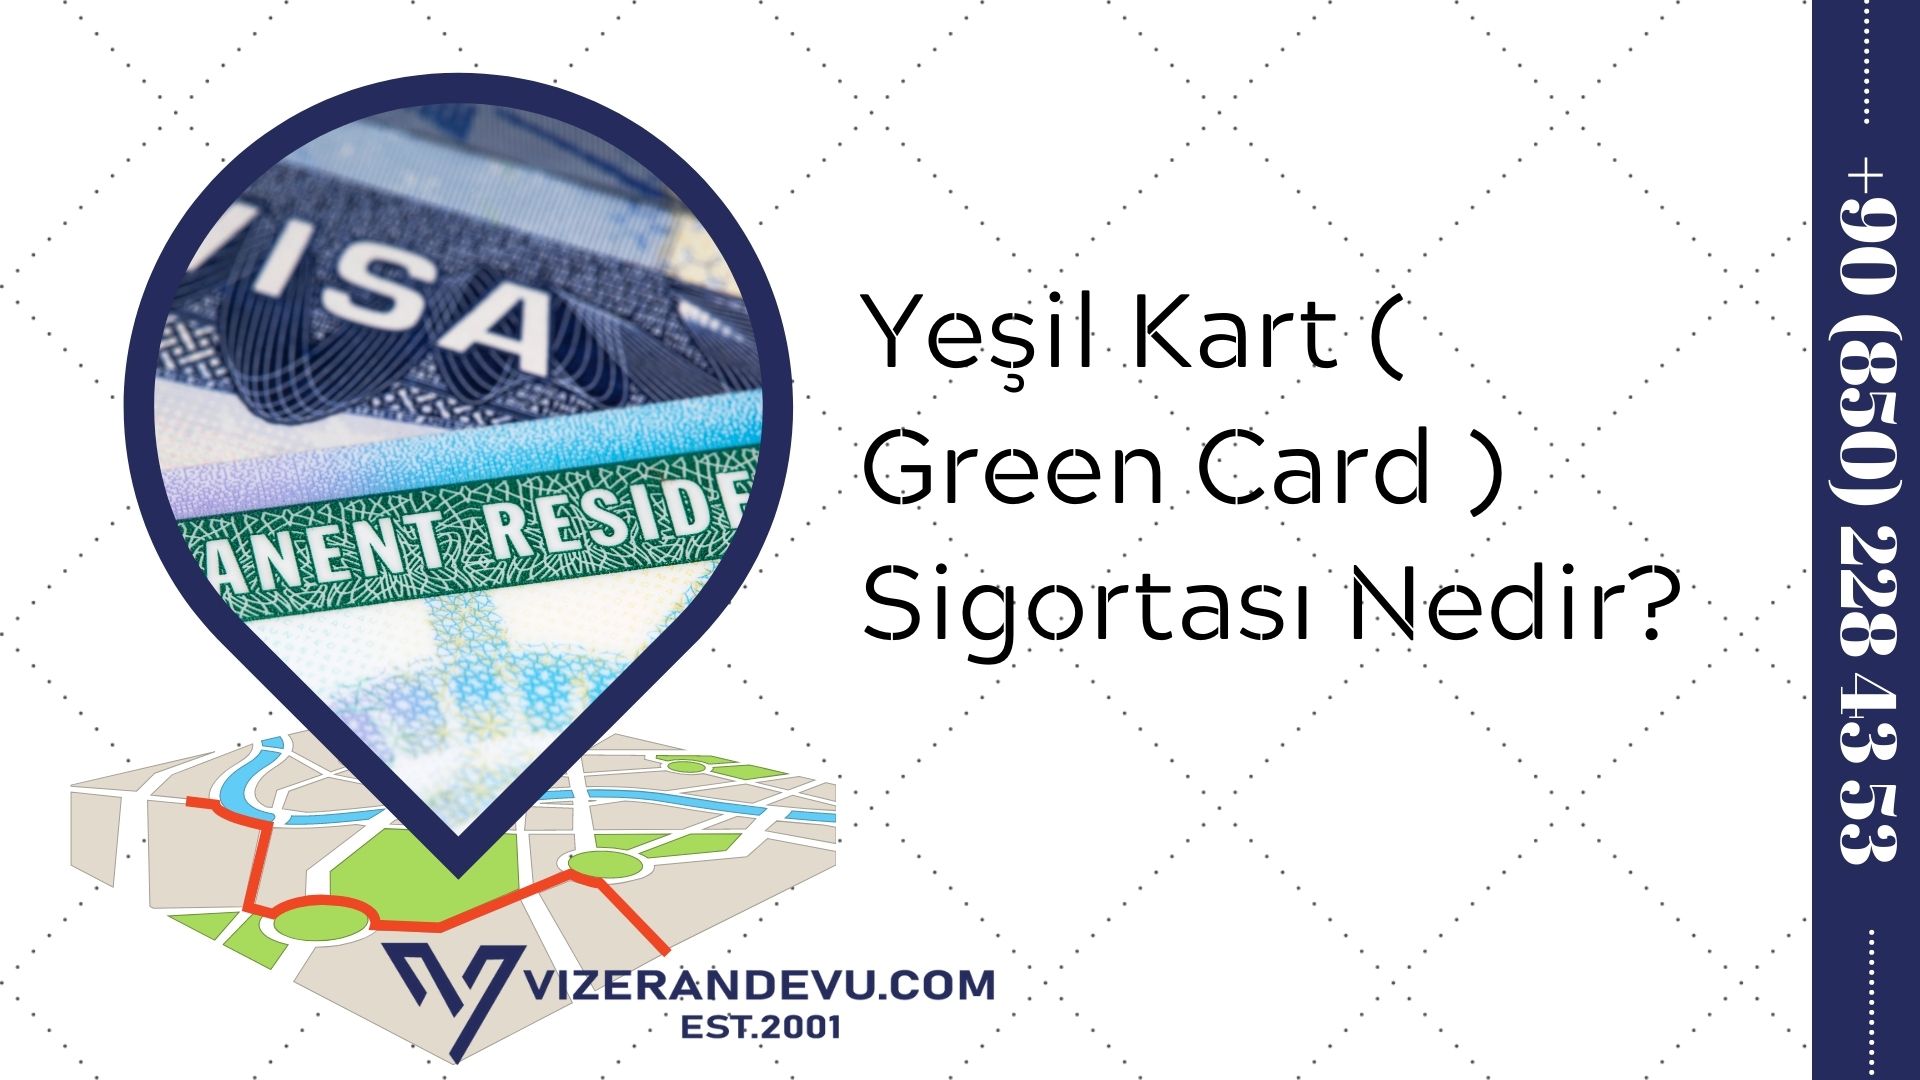 Yeşil Kart ( Green Card ) Sigortası Nedir?